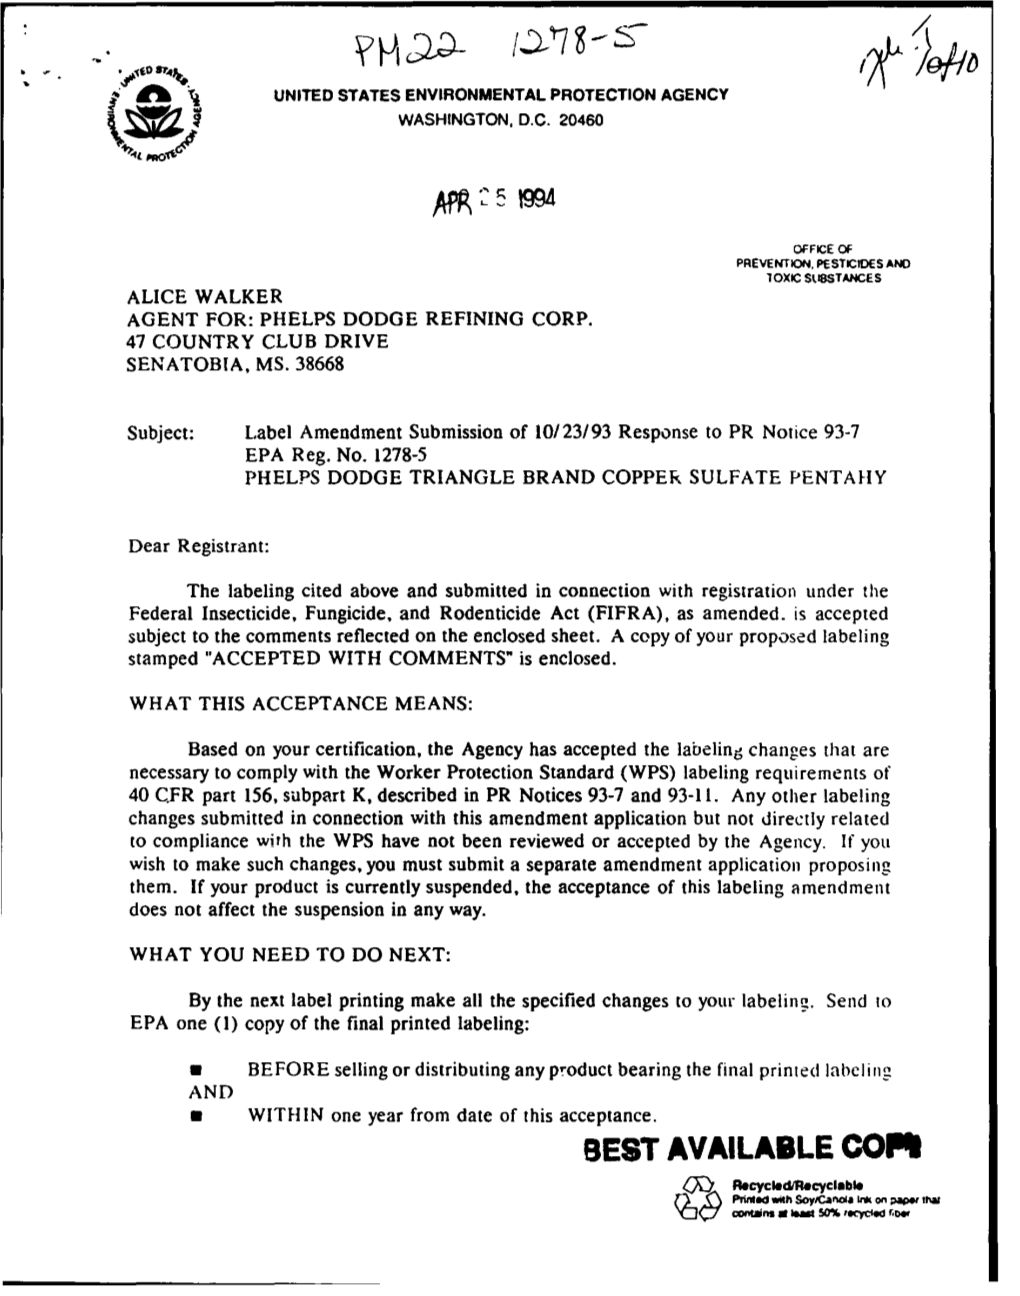 U.S. EPA, Pesticide Product Label, TRIANGLE BRAND COPPER SULFATE INSTANT POWDER, 04/25/1994